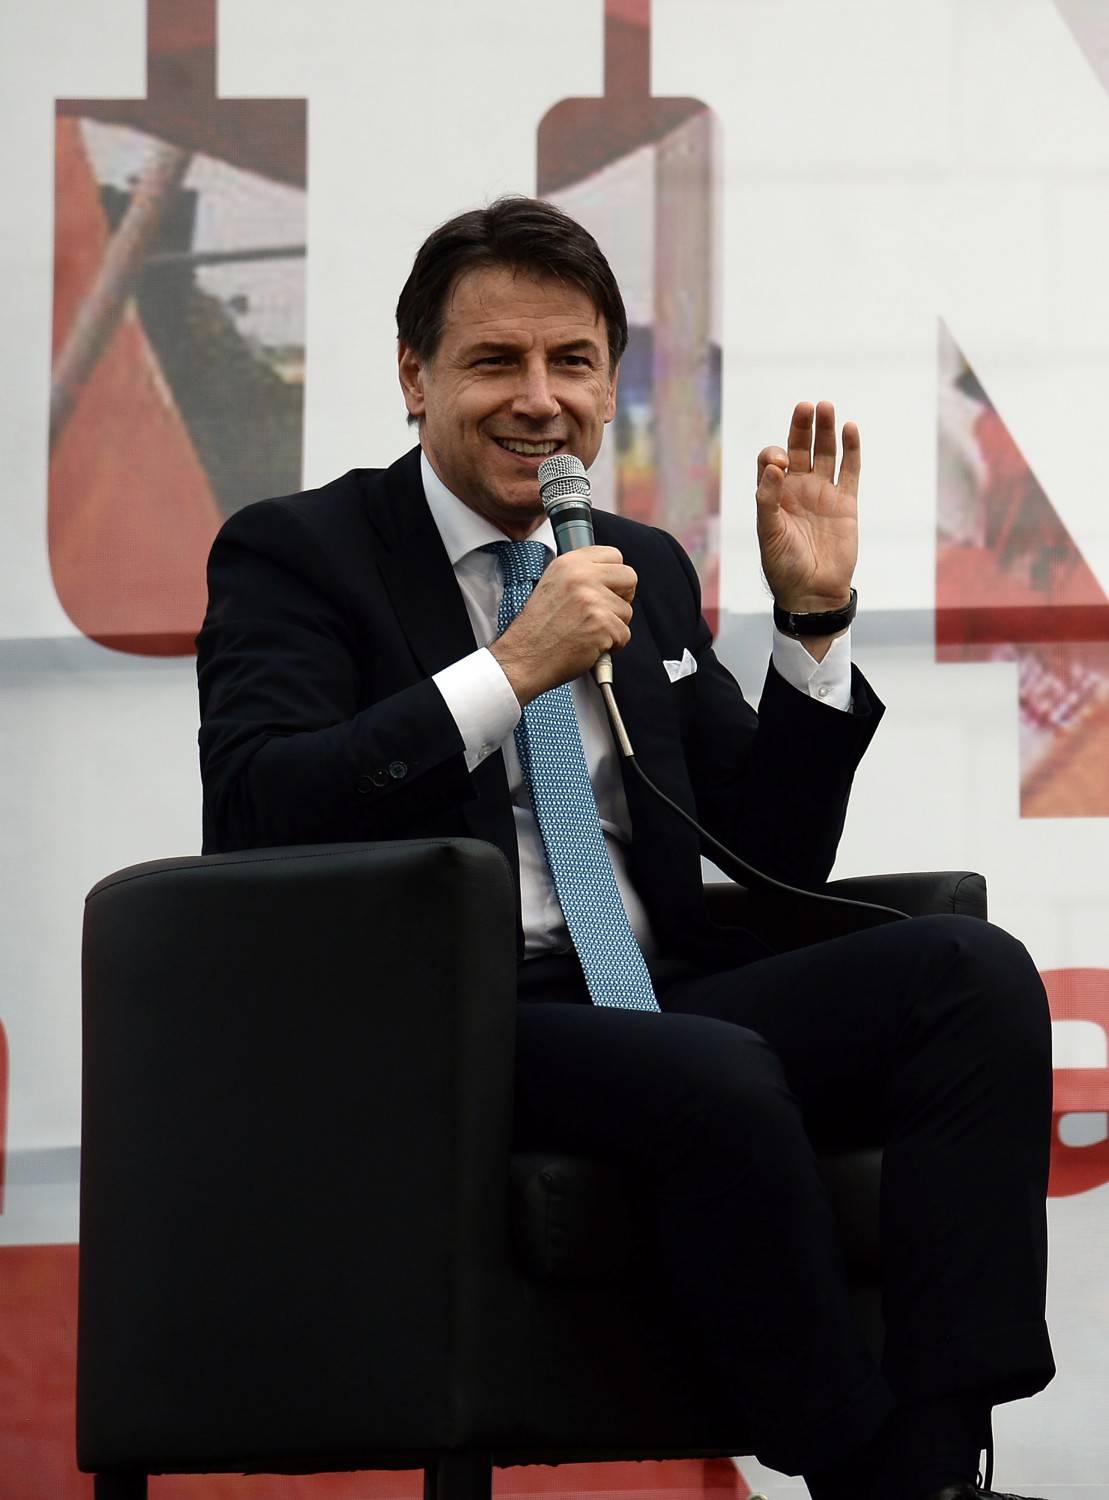 Conte alla festa di LeU: "Di Battista? Io del Pd mi fido, Renzi era nell'aria"